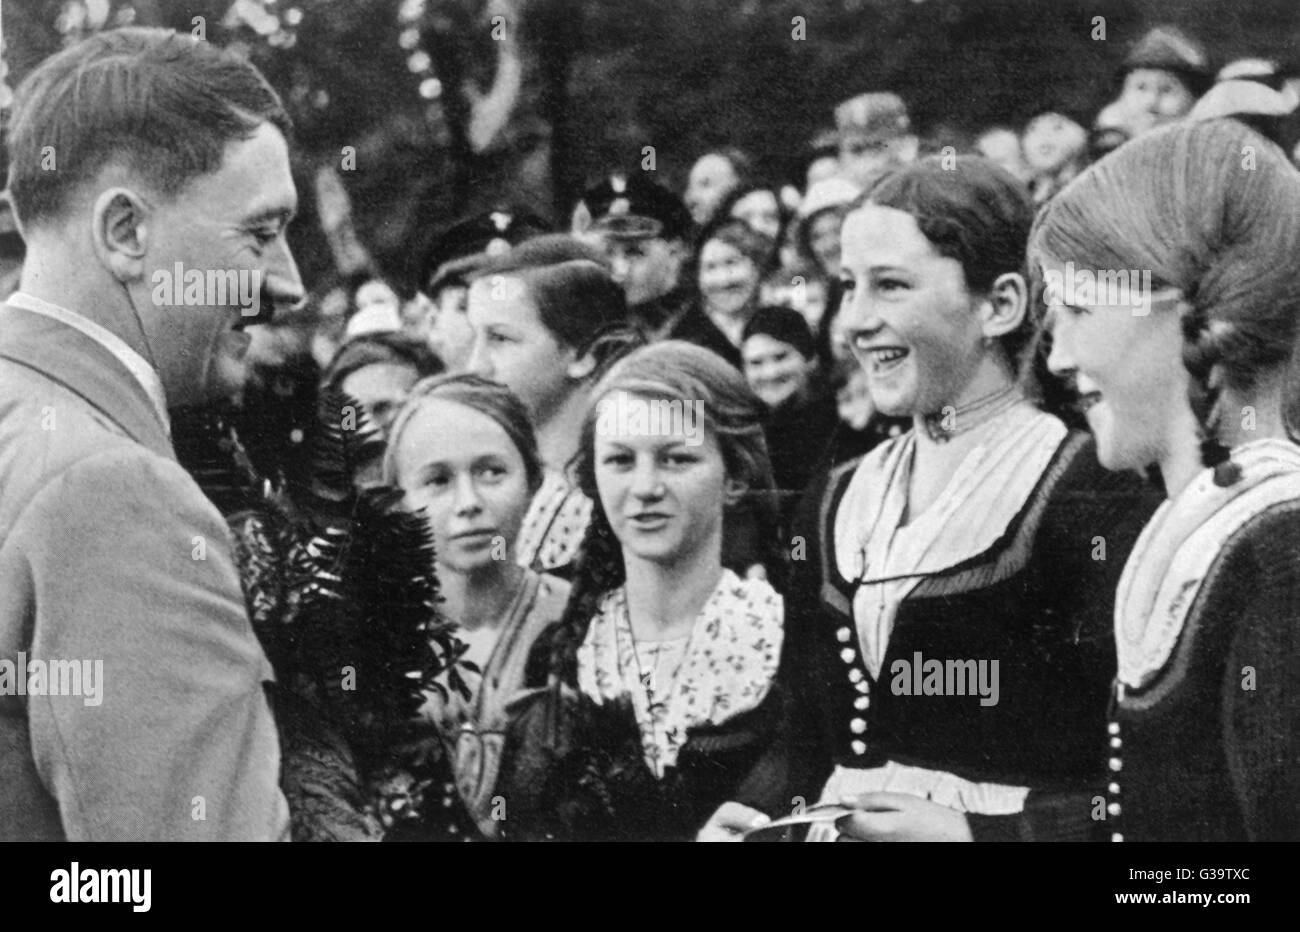 ADOLF HITLER der glücklichste Tag des Lebens, ein junges Mädchen des Tages Hitler Datum traf: ca. 1934 Stockfoto